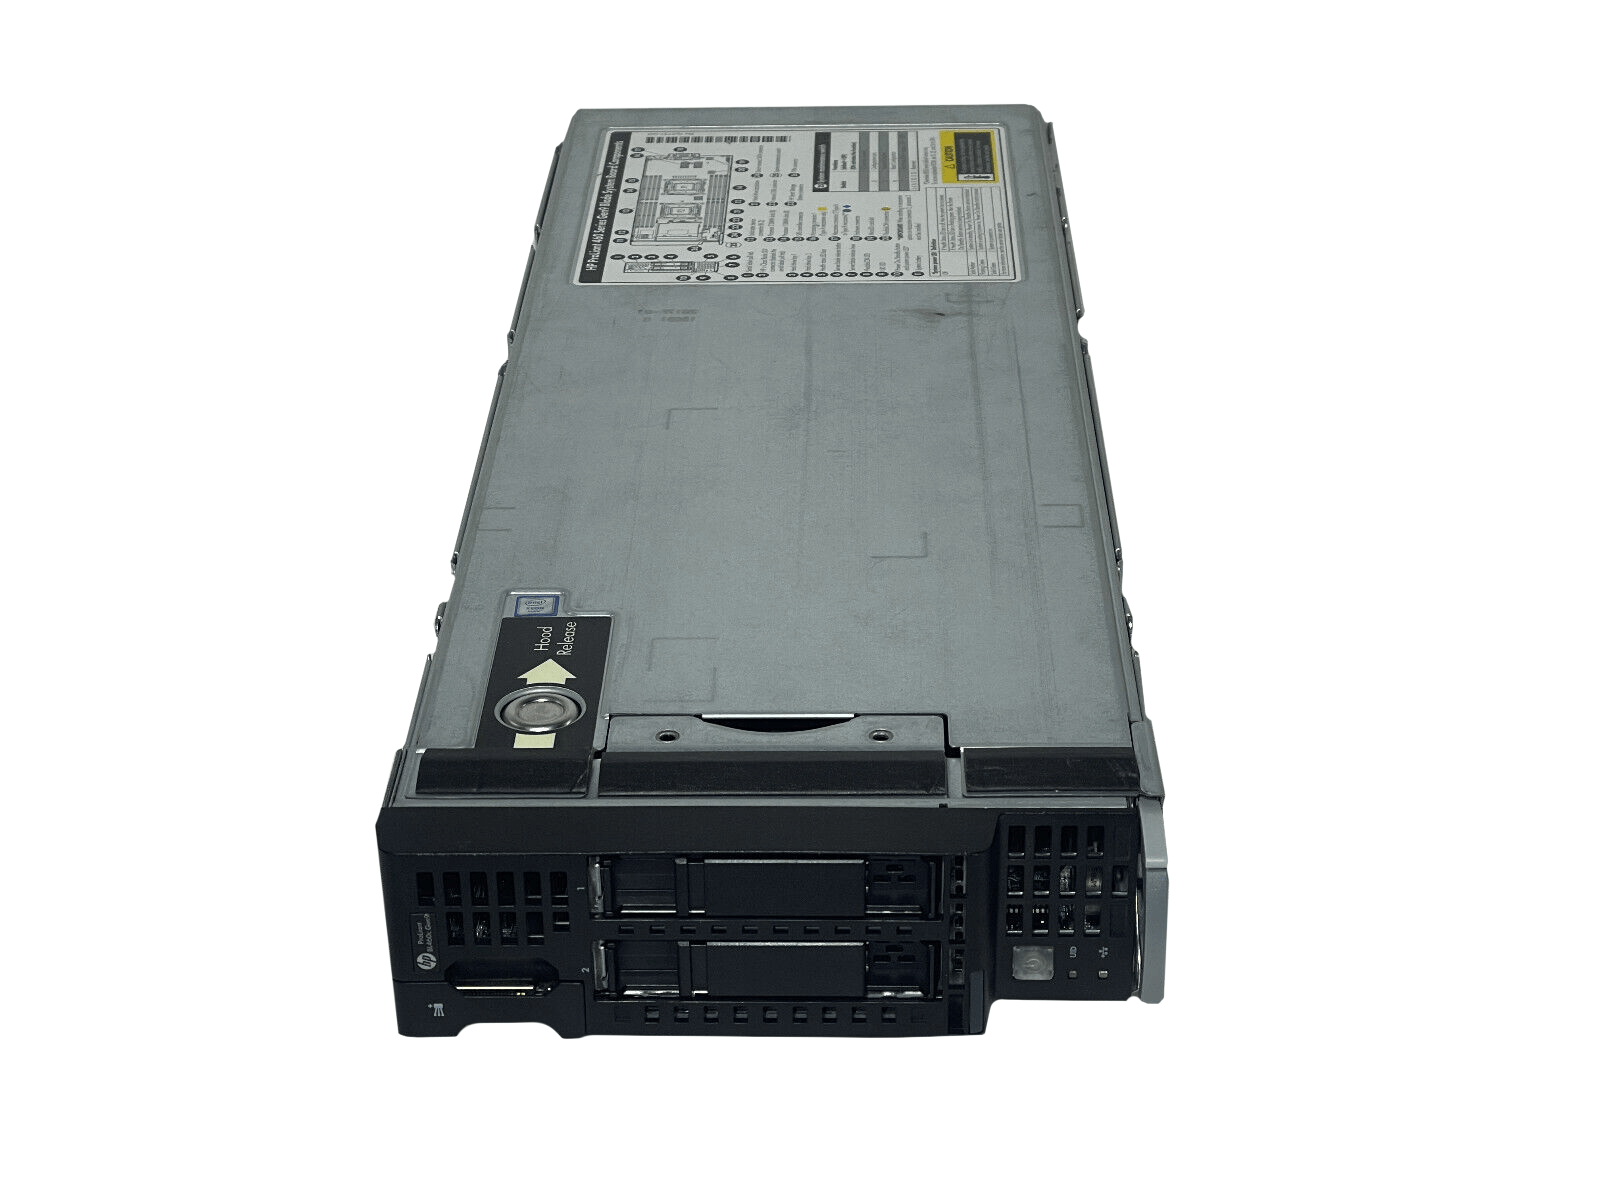 HPE BL460c Gen9 Blade Server 2SFF 2x 10C E5-2650 v3 512GB P244br 630FLB 10GbE.